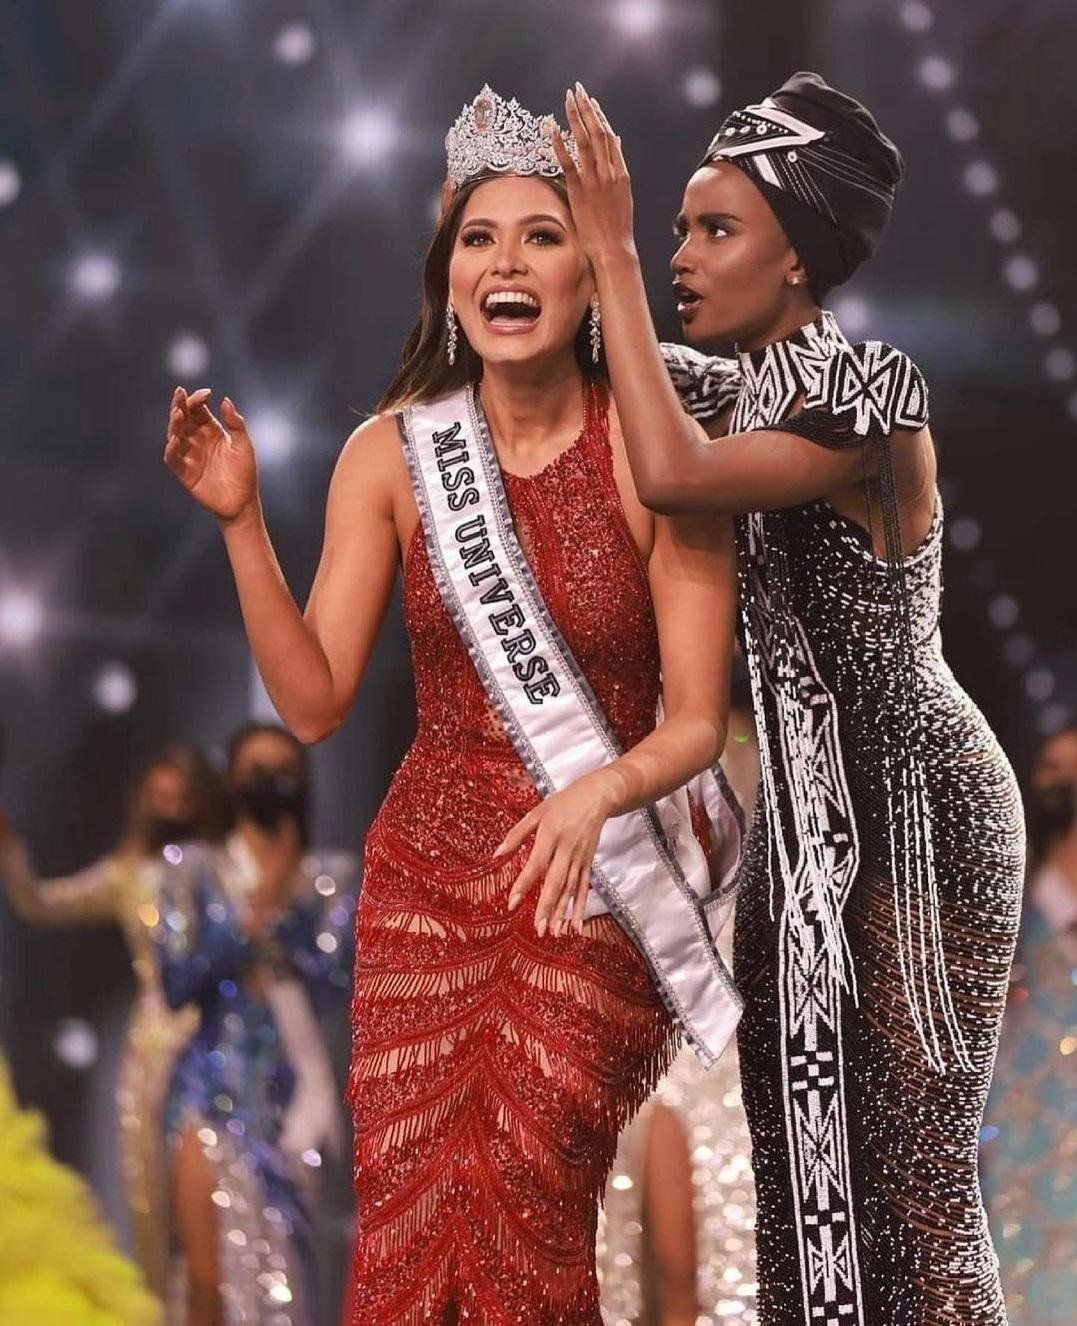 ملكة جمال الكون 2020 تاج معوض mouawad أندريا ميزا Andrea Meza 